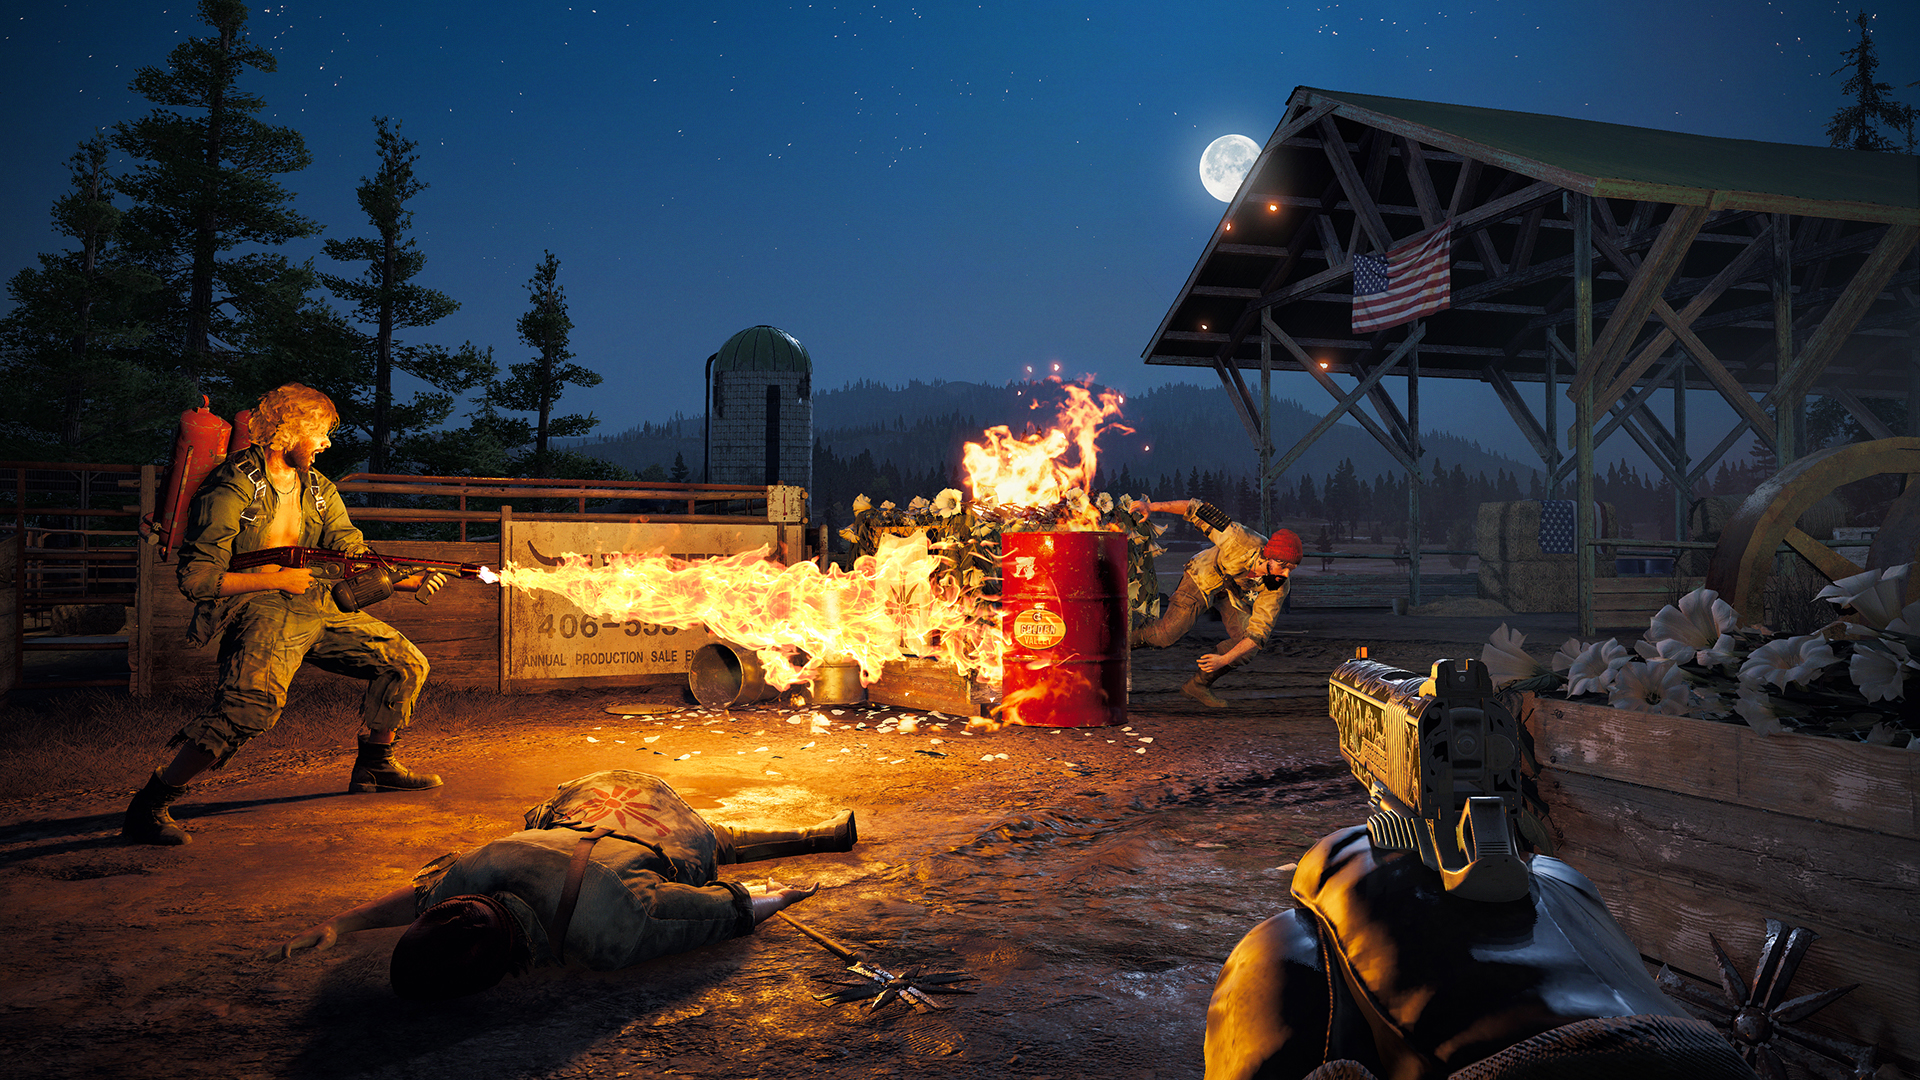 Far Cry 5 Steam Deck, High Settings